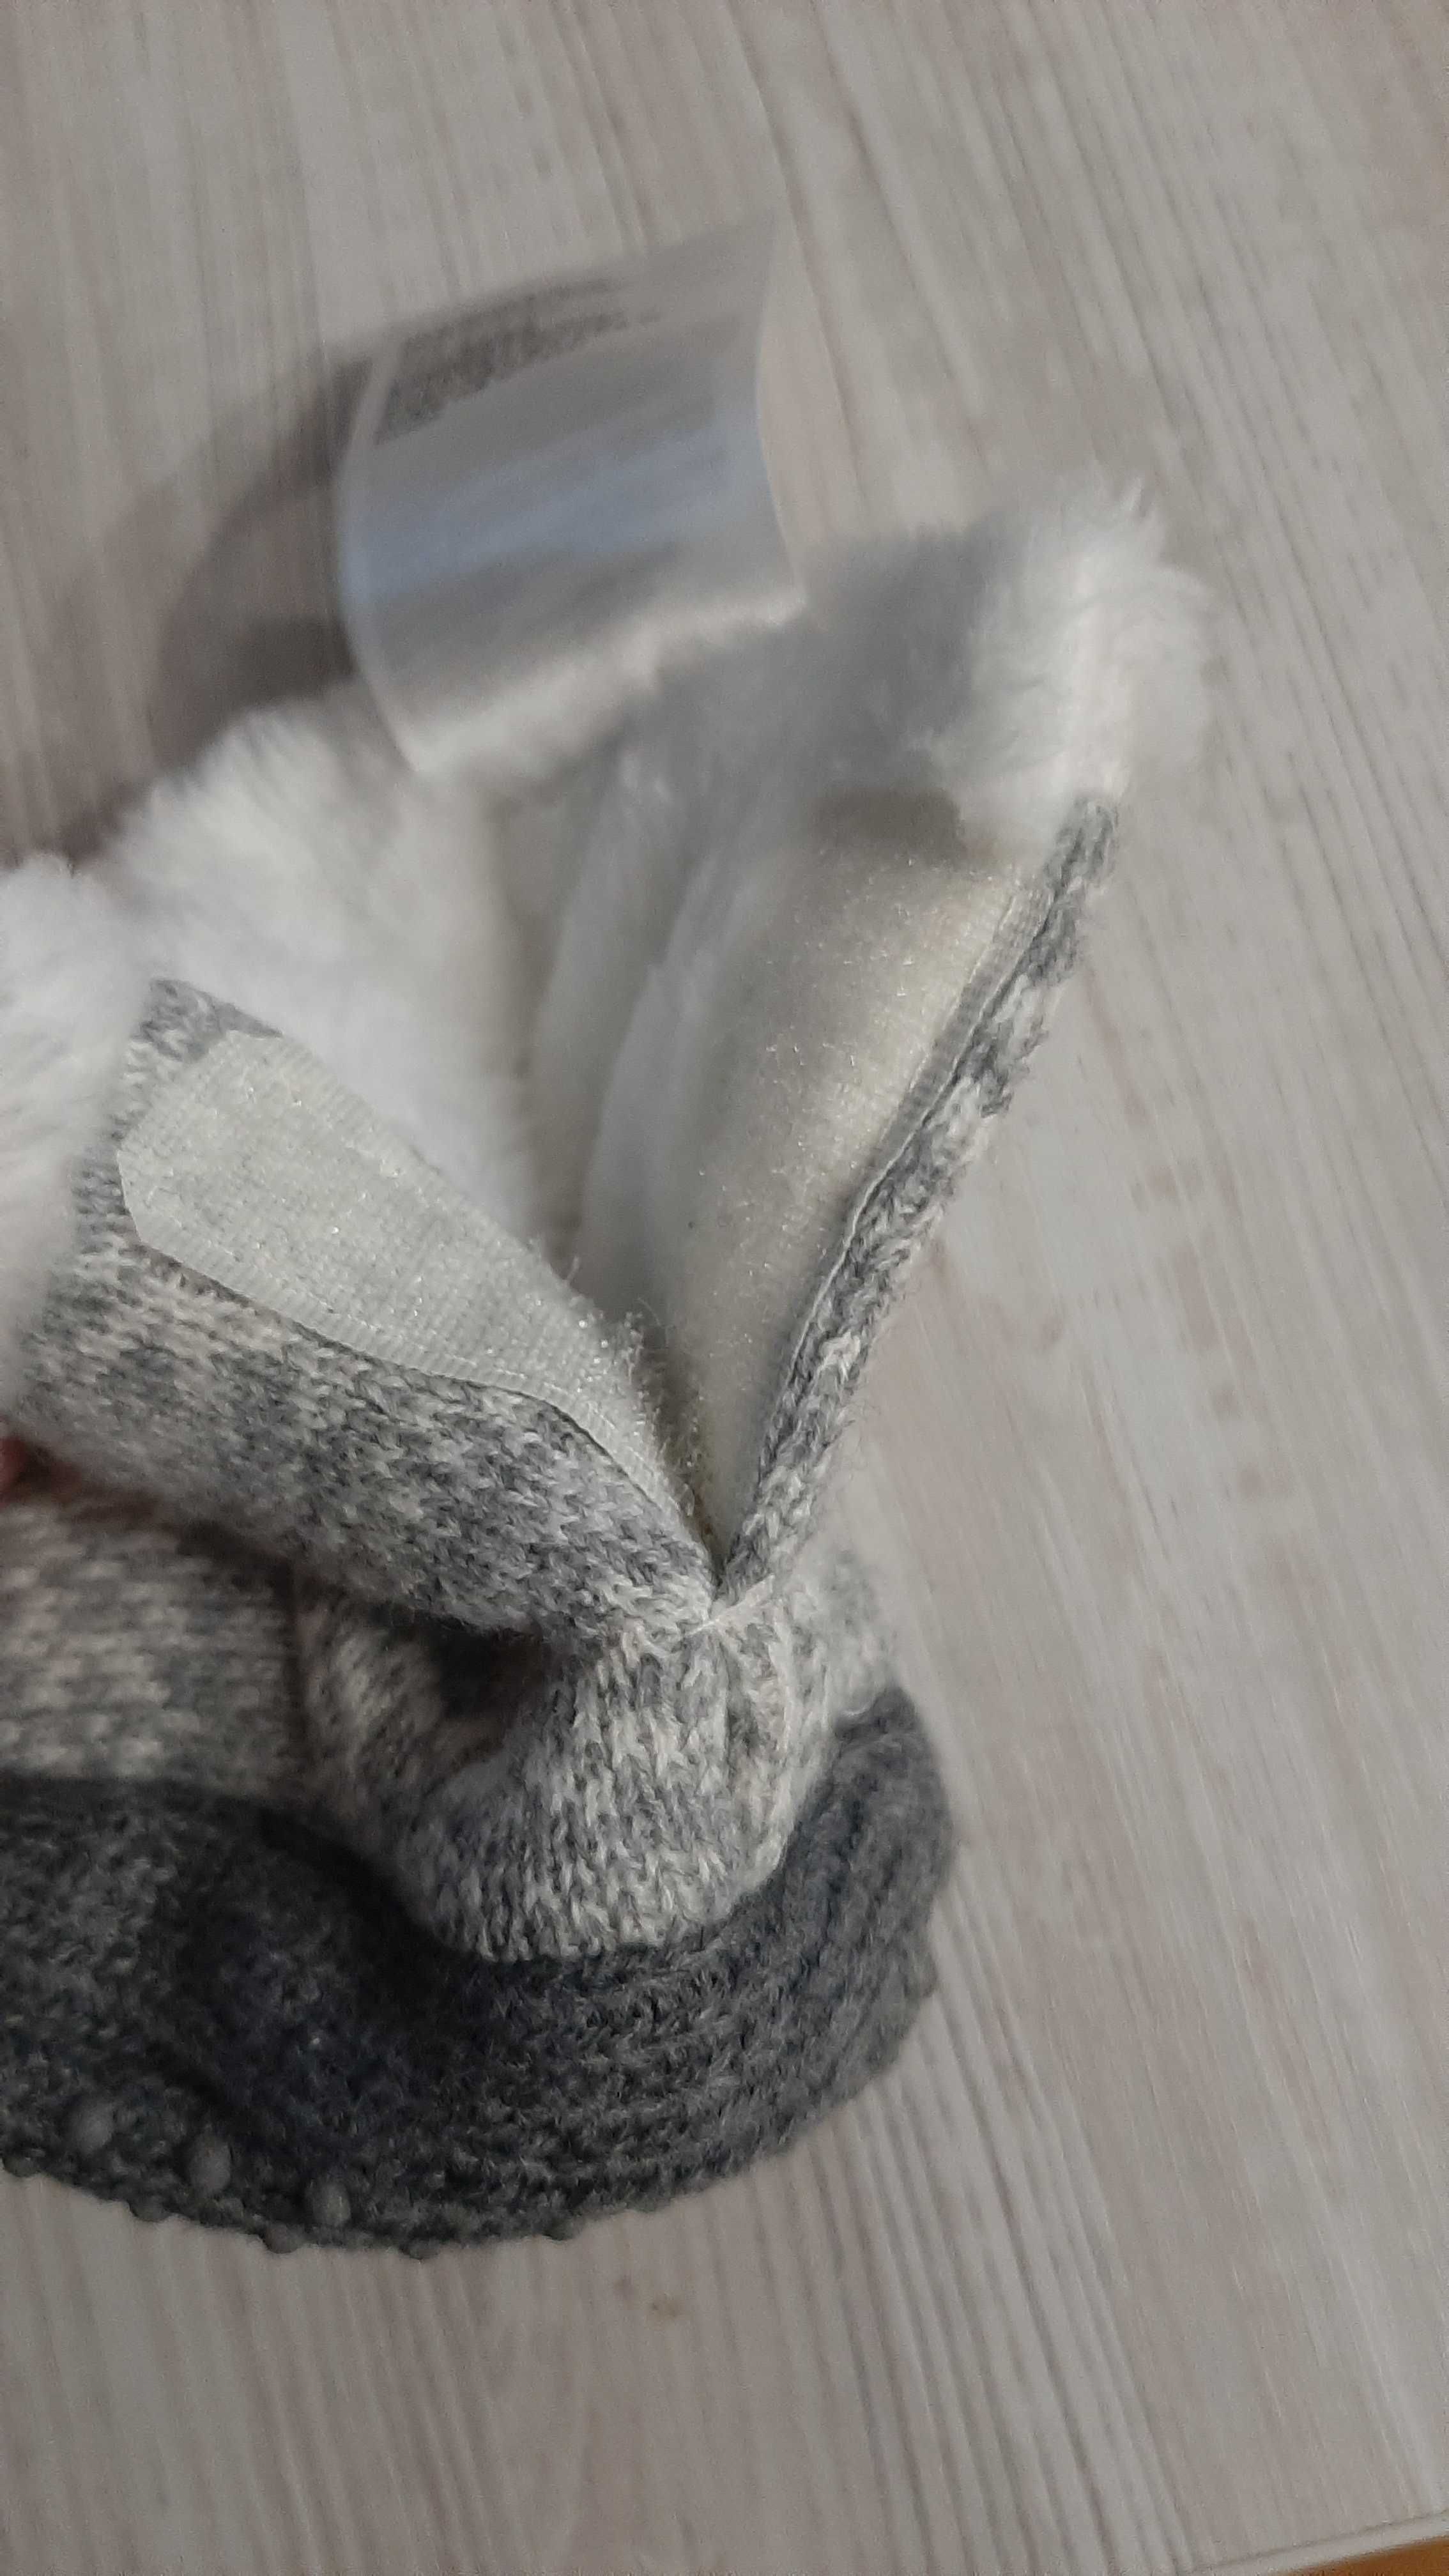 Nowe Buty buciki h&m niechodki antypoślizgowe zimowe szare